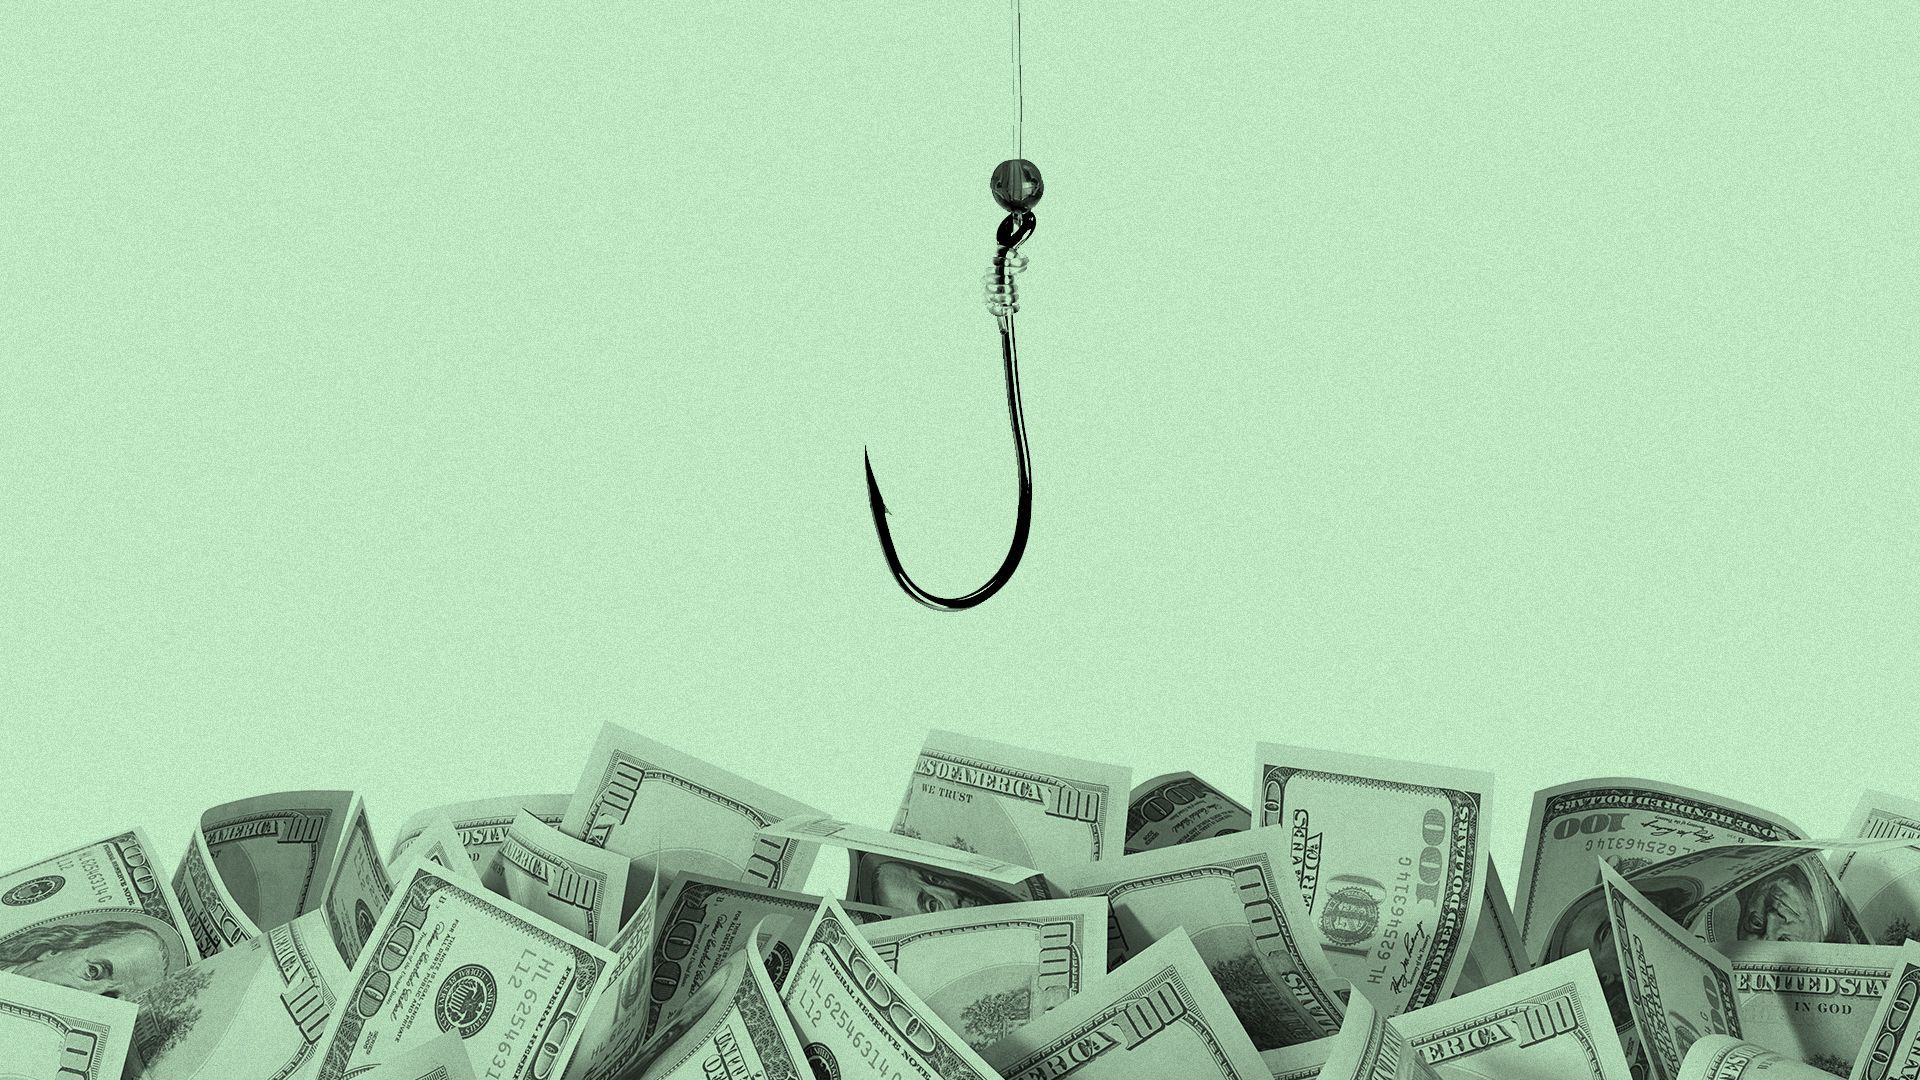 Illustration of a fishing hook sinking into an ocean of hundred dollar bills.